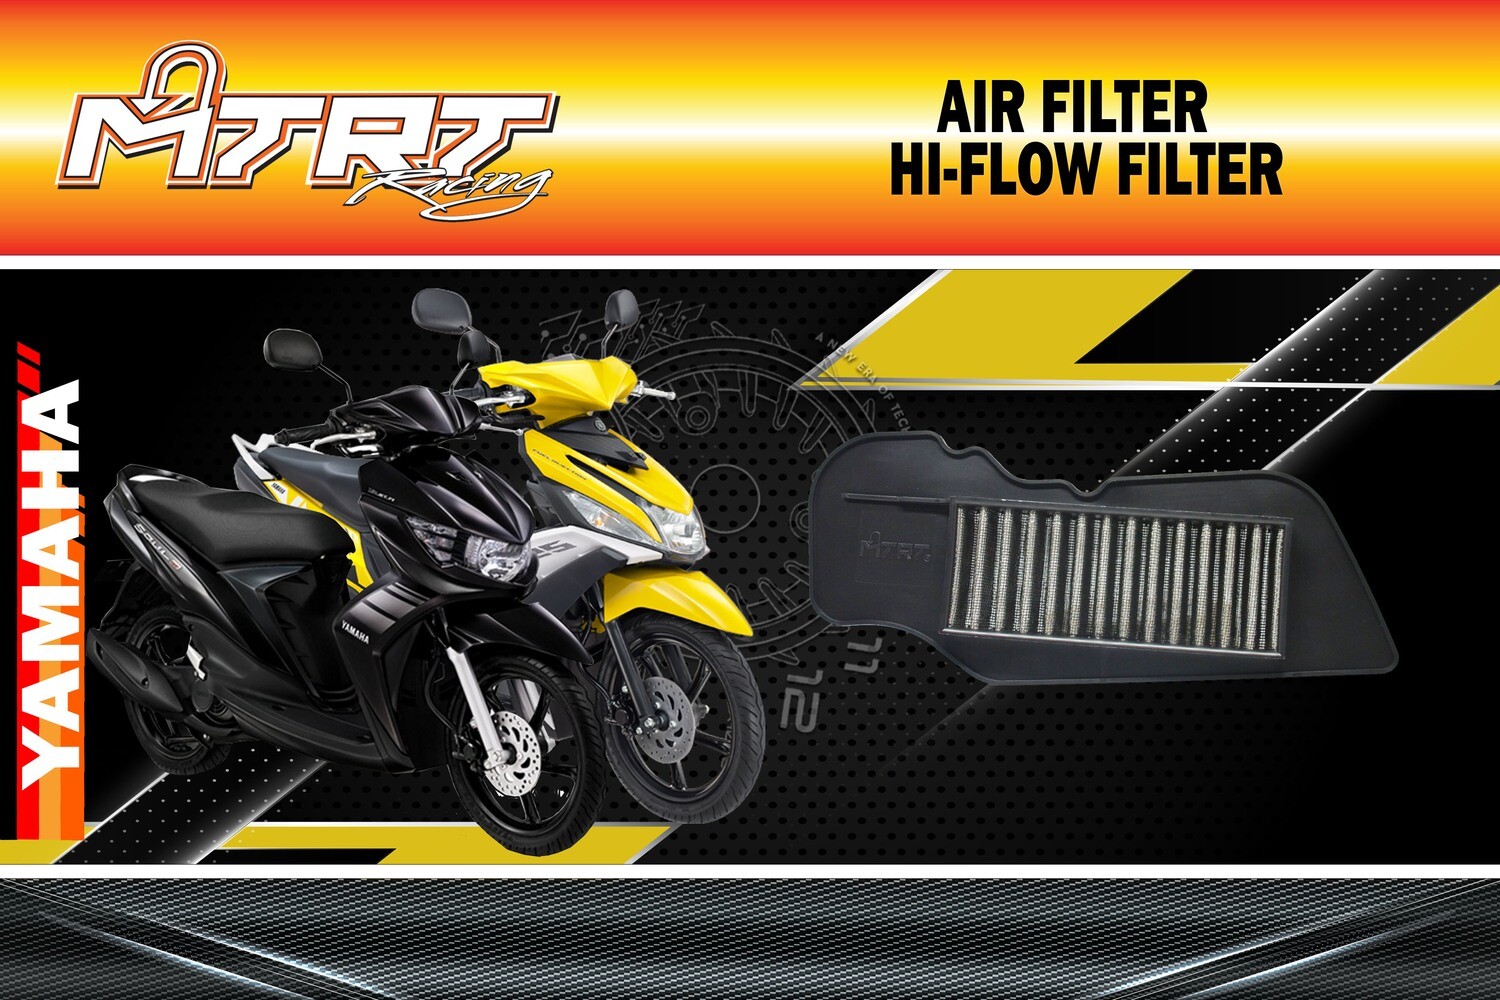 AIR FILTER MIOi125 "MTRT" Hi-flow filter